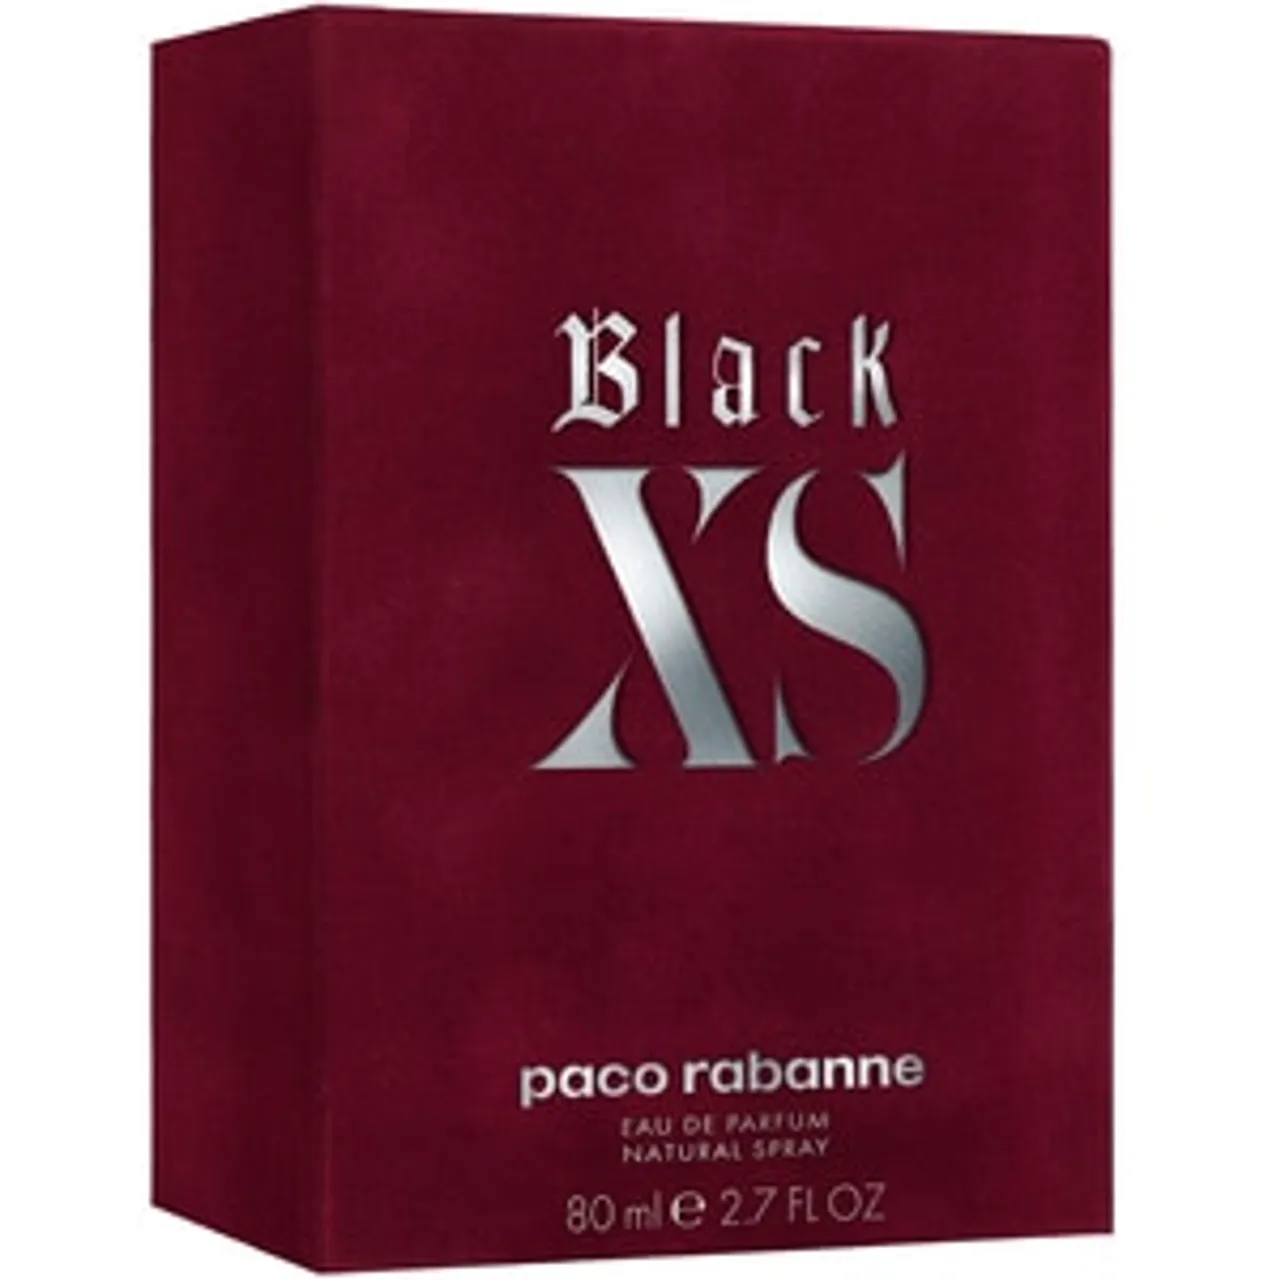 Rabanne Black Xs For Her EAU DE PARFUM 80 ML